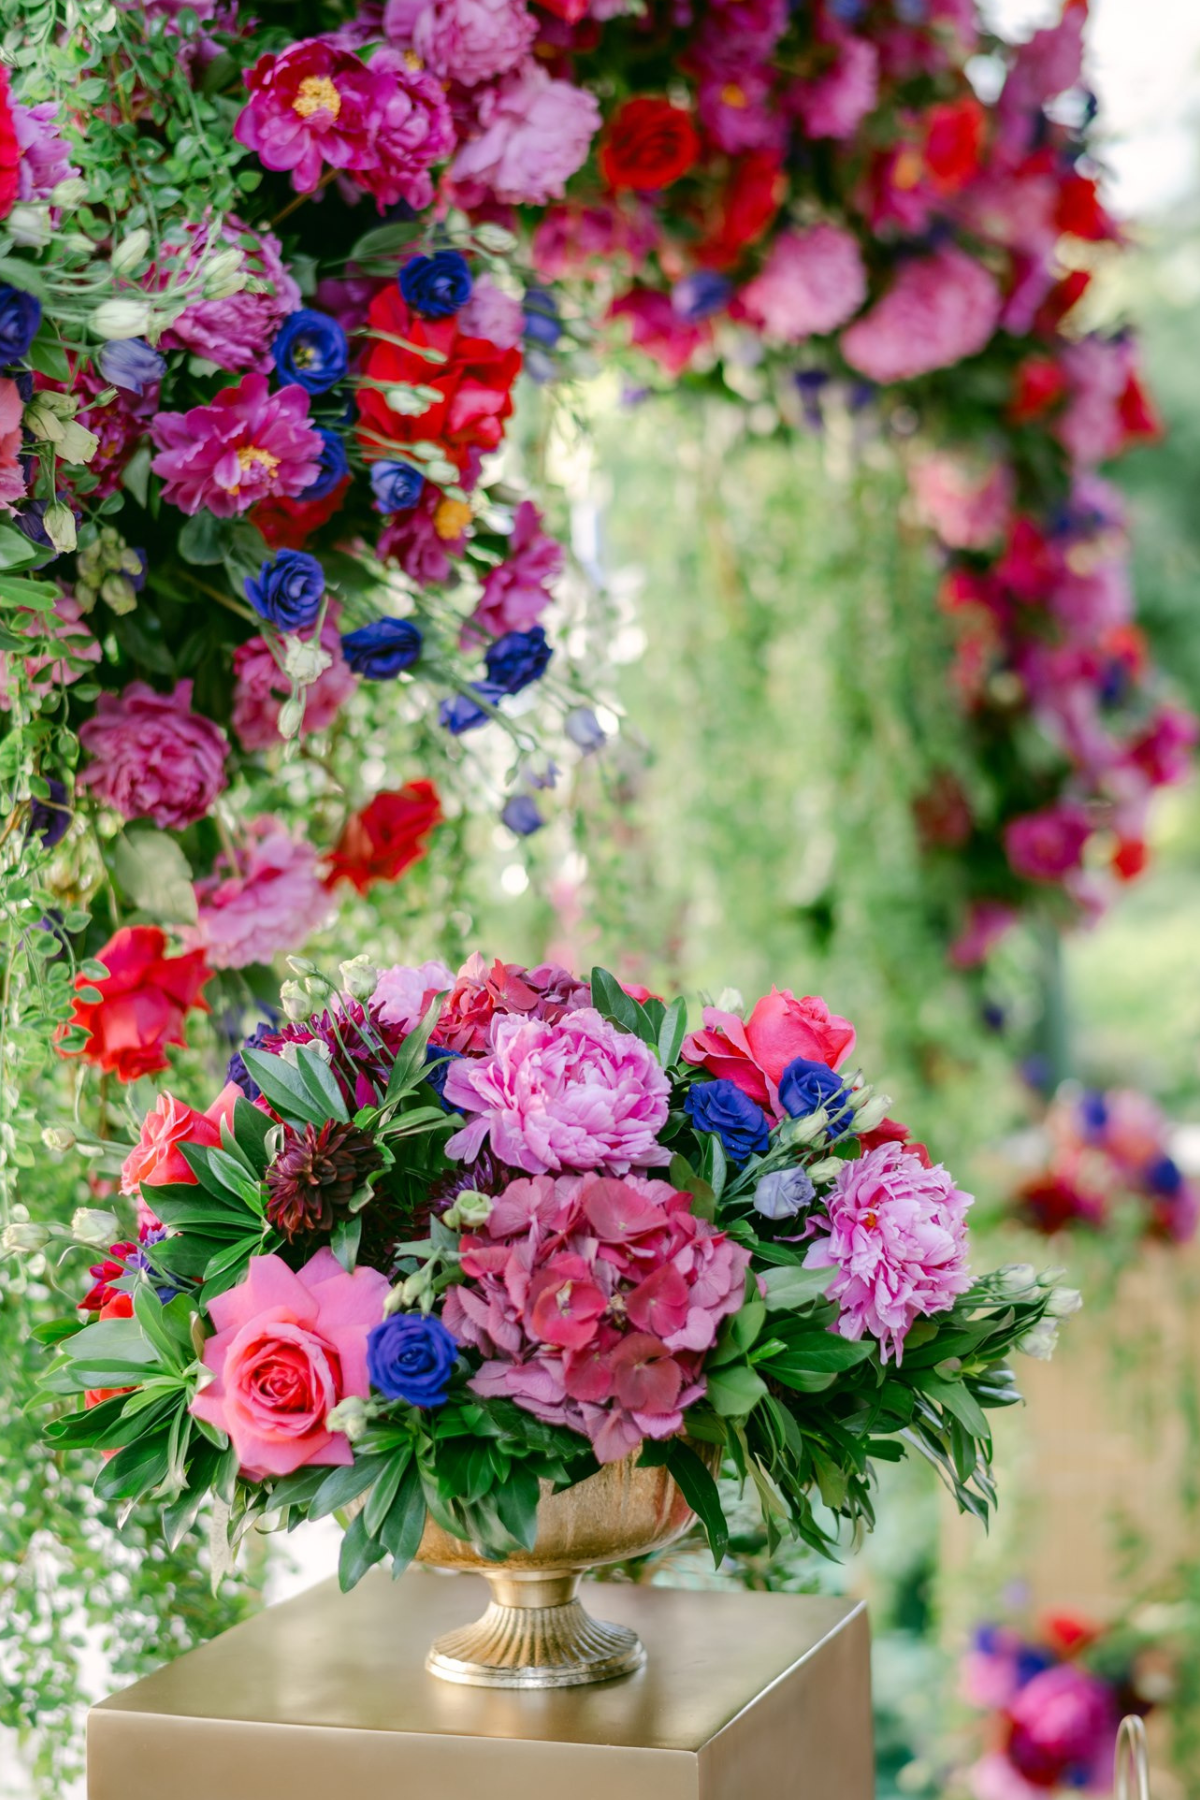 secret-garden-wedding-red-purple-pink-flowers-greenery-centerpiece-gold-vase